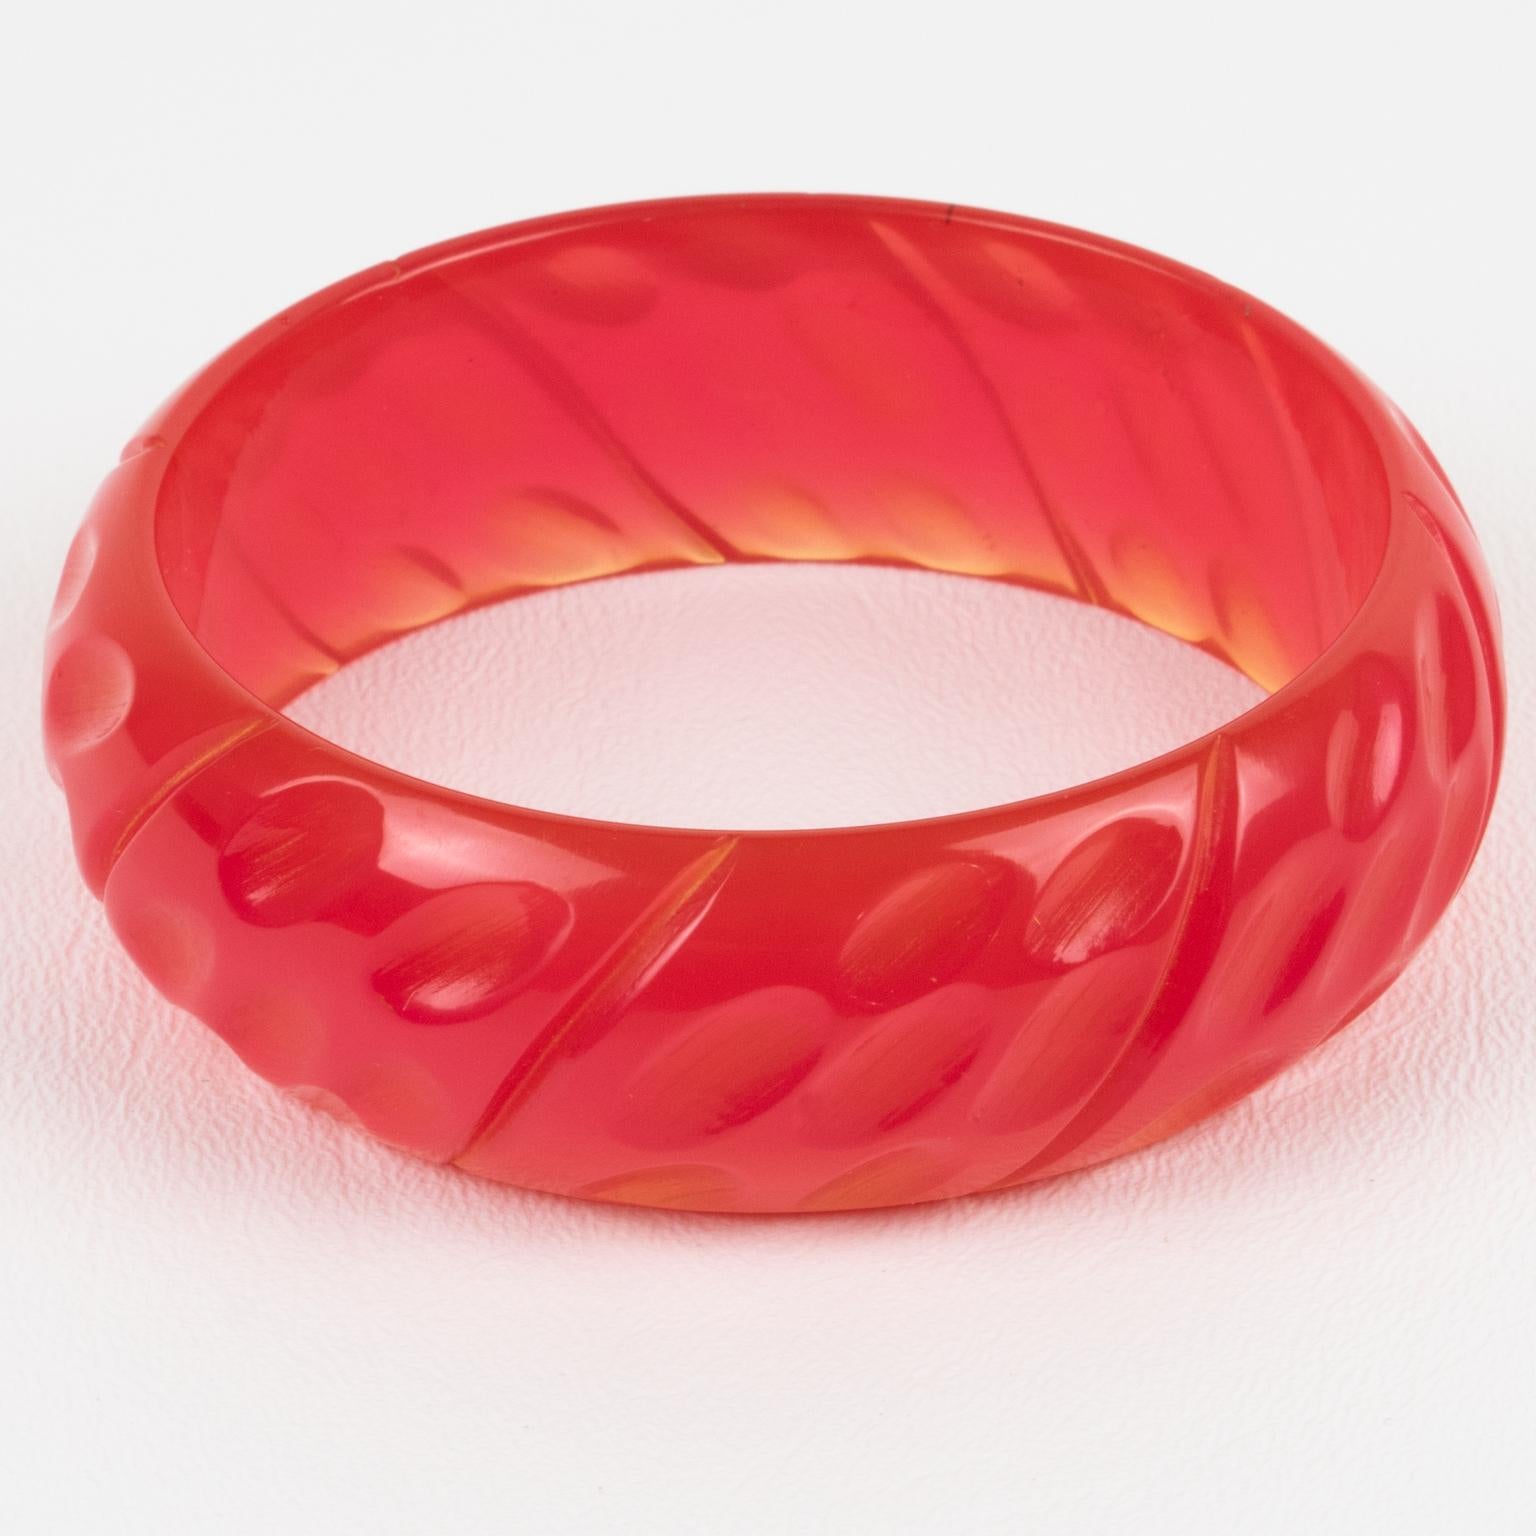 Dies ist eine spektakuläre heißen rosa Bubblegum Bakelit Armband Armreif. Er hat eine klobige, gewölbte Form mit geometrischen und tief geschnitzten Mustern rundherum. Die Farbe ist ein intensiver, heißer, rosafarbener Uni-Ton mit vollständiger